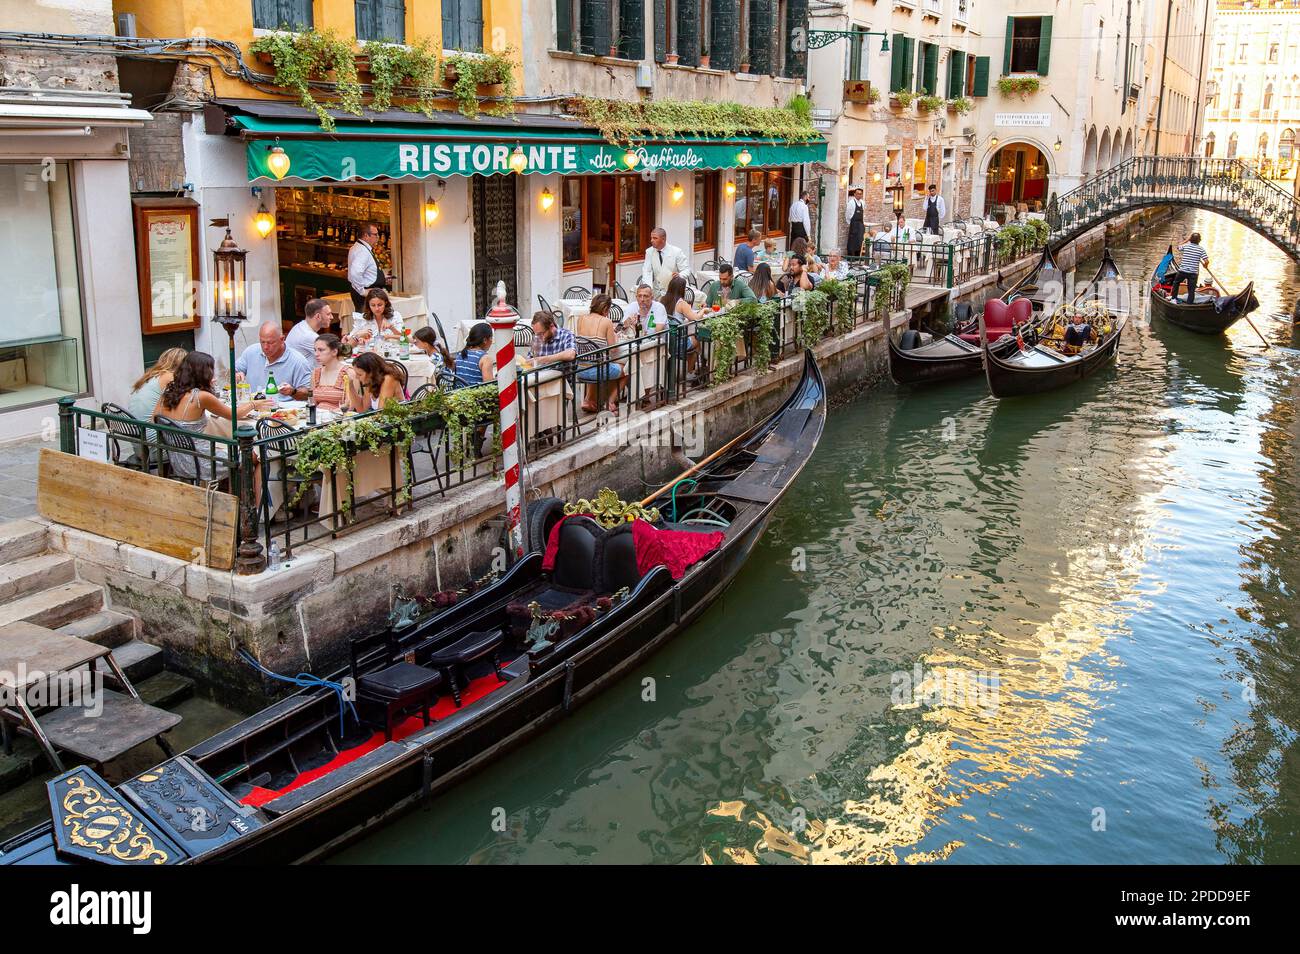 Typisches Restaurant in einem chanel mit Gondeln, Italien, Venedig Stockfoto